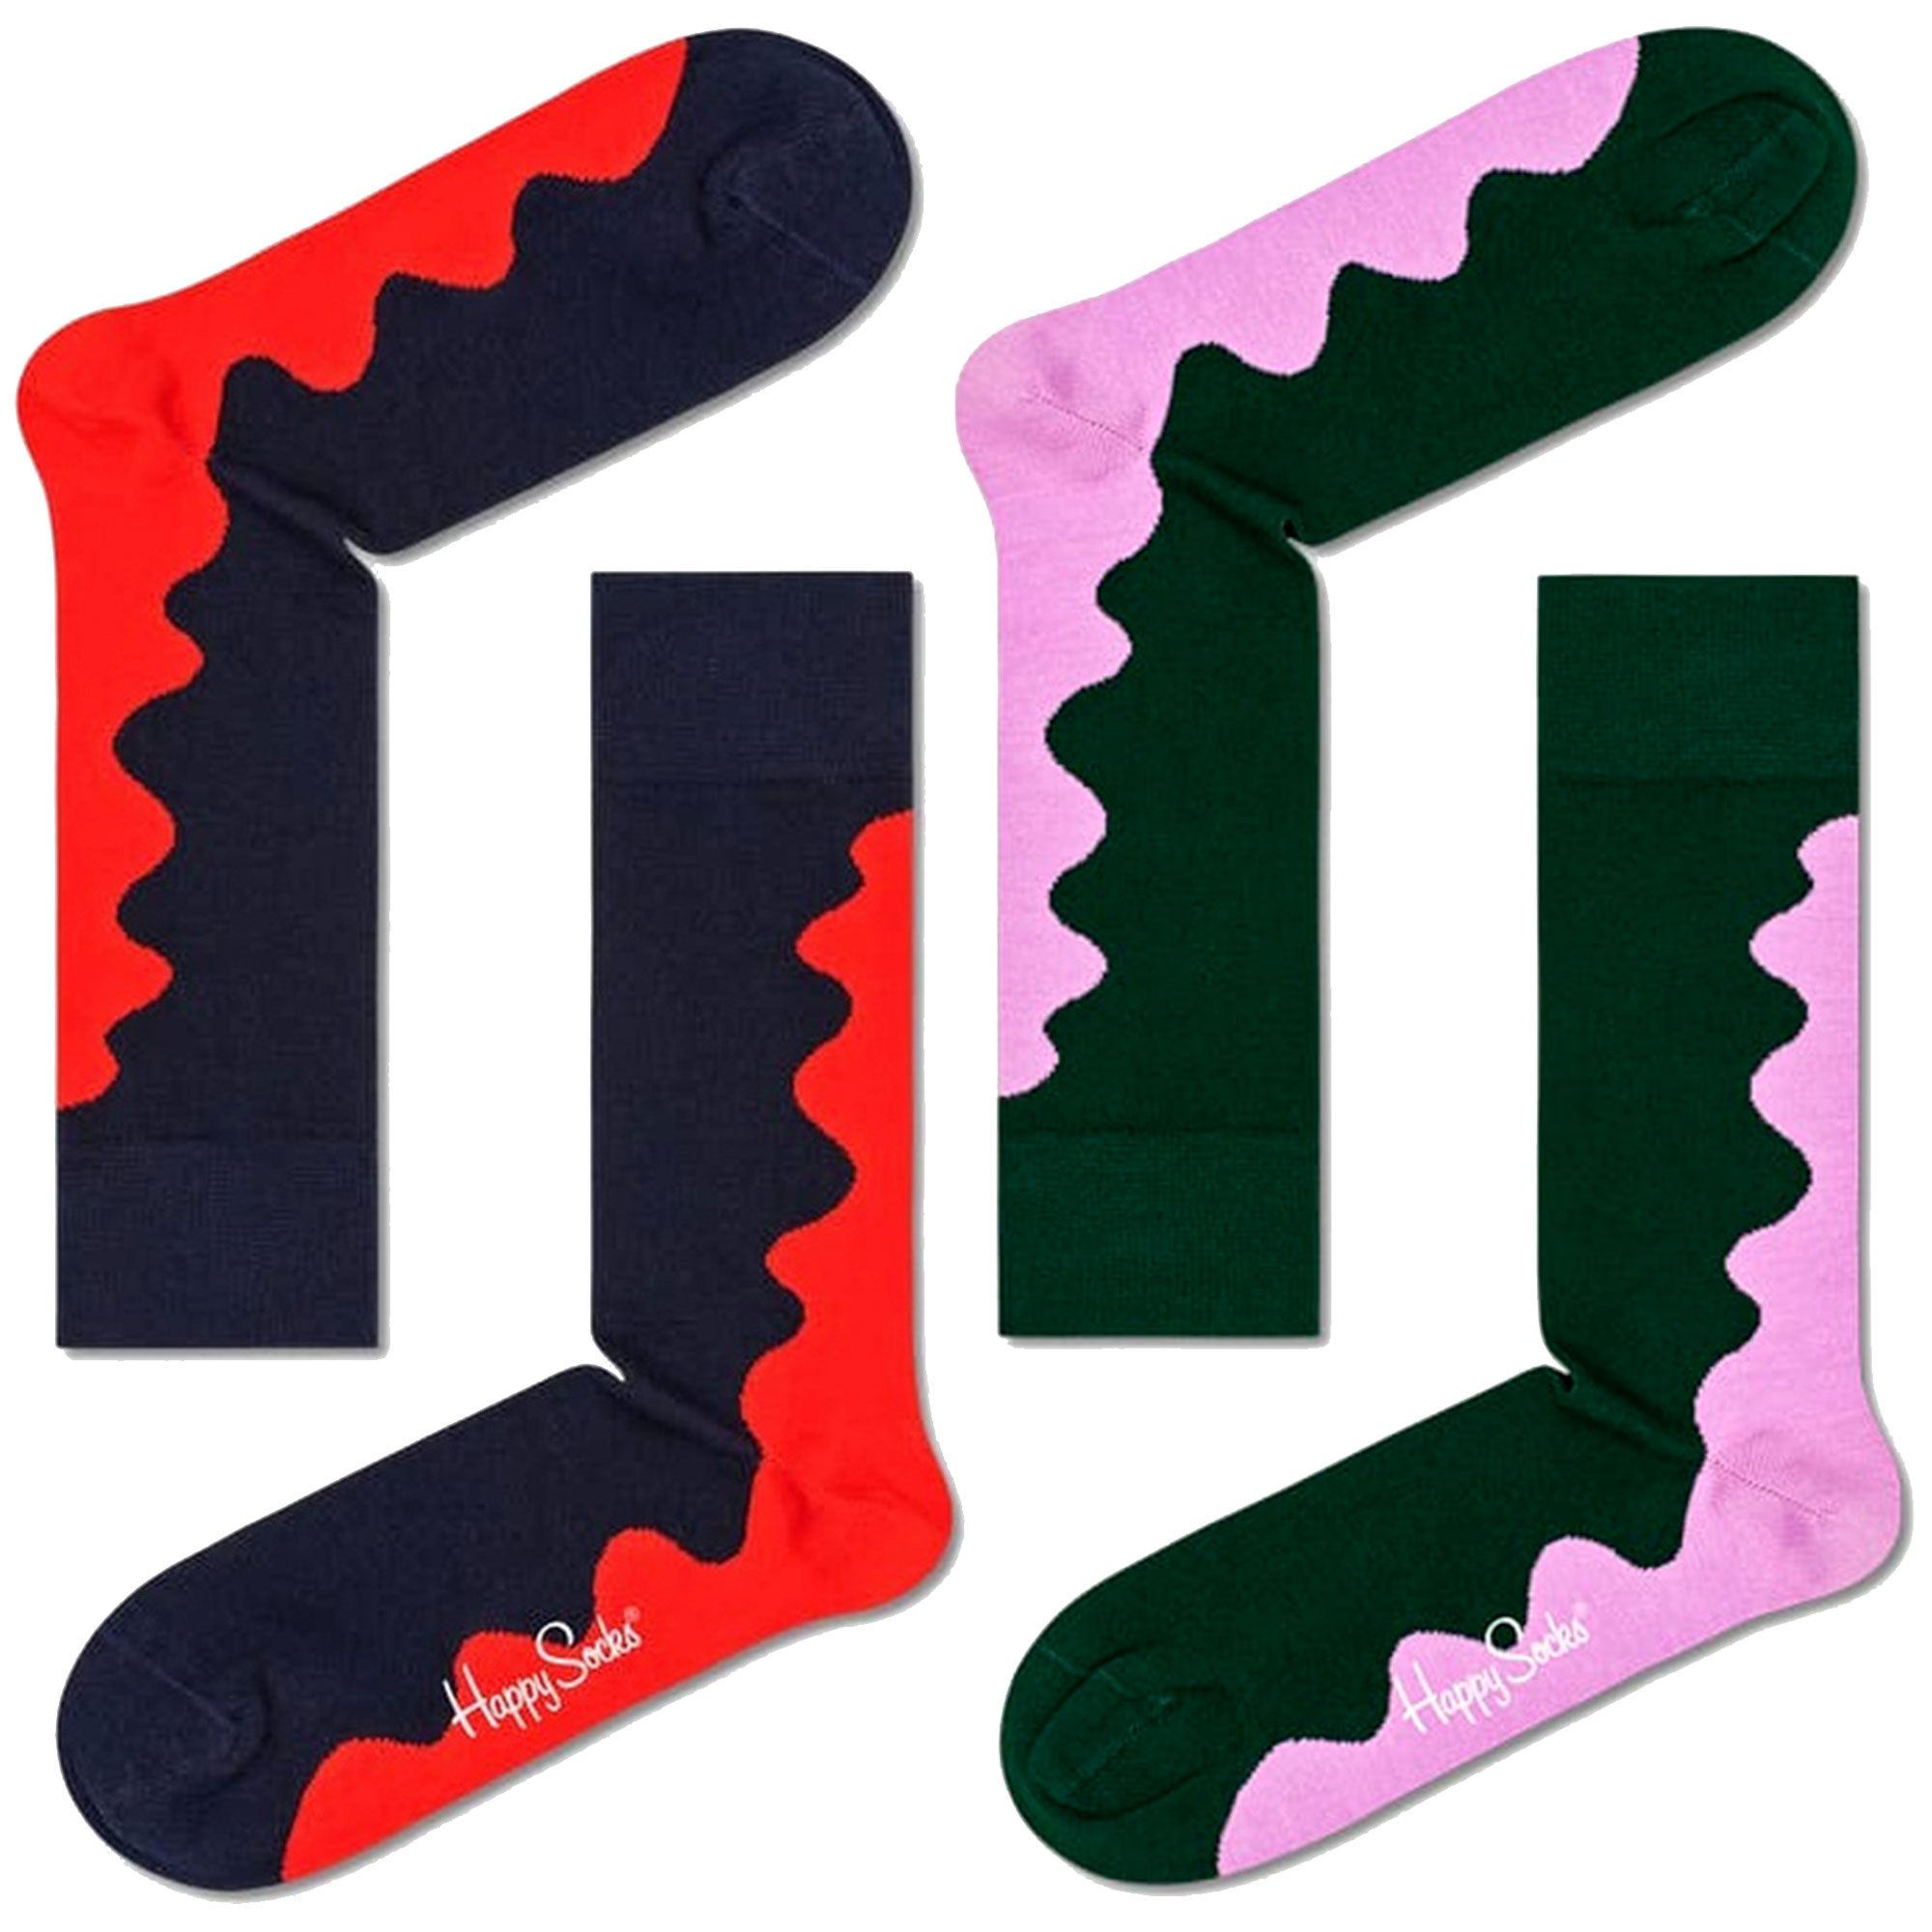 Pack 2 Pares De Calcetines Happy Socks Wave Rojo Y Rosa - multicolor - 